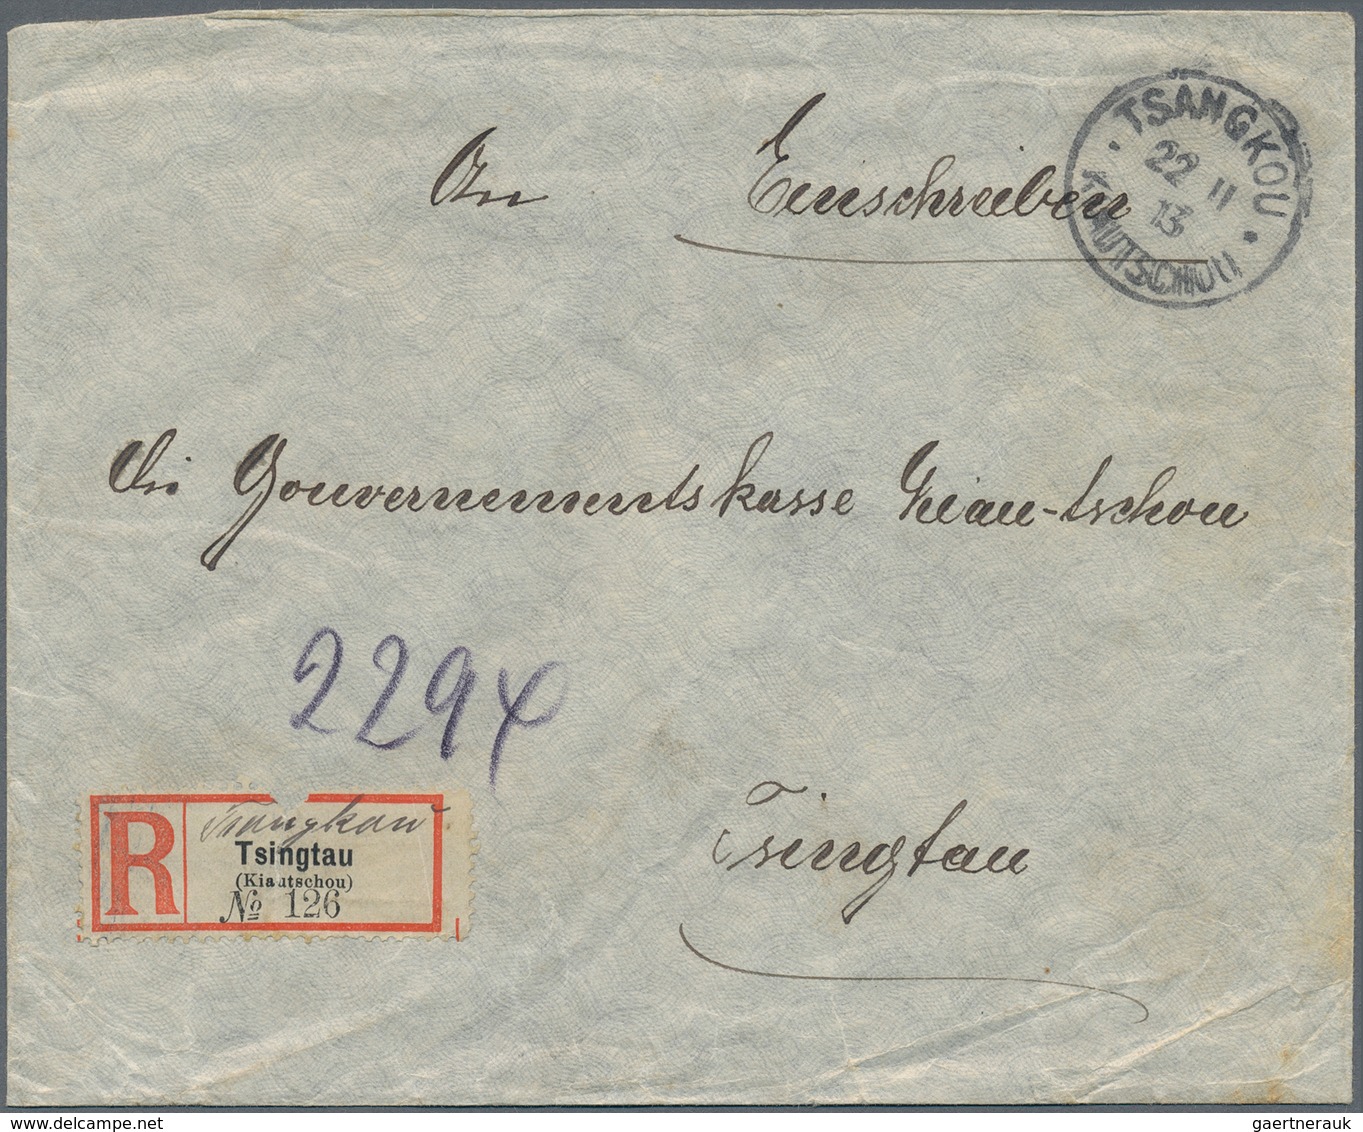 Deutsche Kolonien - Kiautschou - Besonderheiten: 1913 (22.11.), 4x4 Cents + 2 Cents (Eckmangel) Auf - Kiauchau